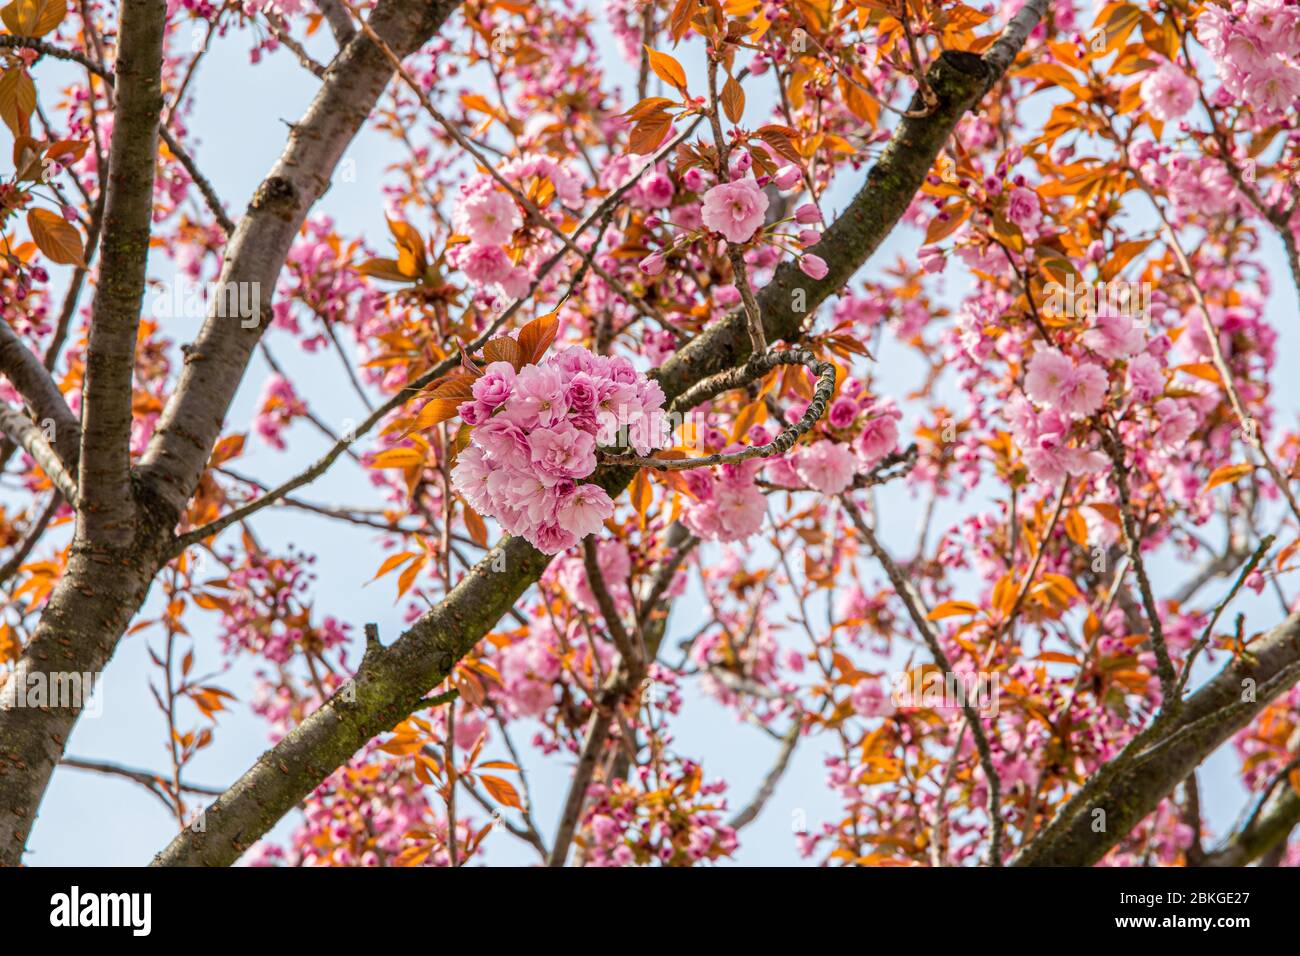 16 aprile 2020, Sassonia, Lipsia: Nella cultura giapponese, la fioritura dei ciliegi giapponesi è un momento culminante del calendario. Segna l'inizio della primavera. La fioritura è sinonimo di bellezza, di transitorietà e di nuovi inizi. Nel frattempo, alcuni alberi sono stati piantati anche nelle città tedesche. Foto: Nico Schimmelpfennig/dpa-Zentralbild/ZB Foto Stock